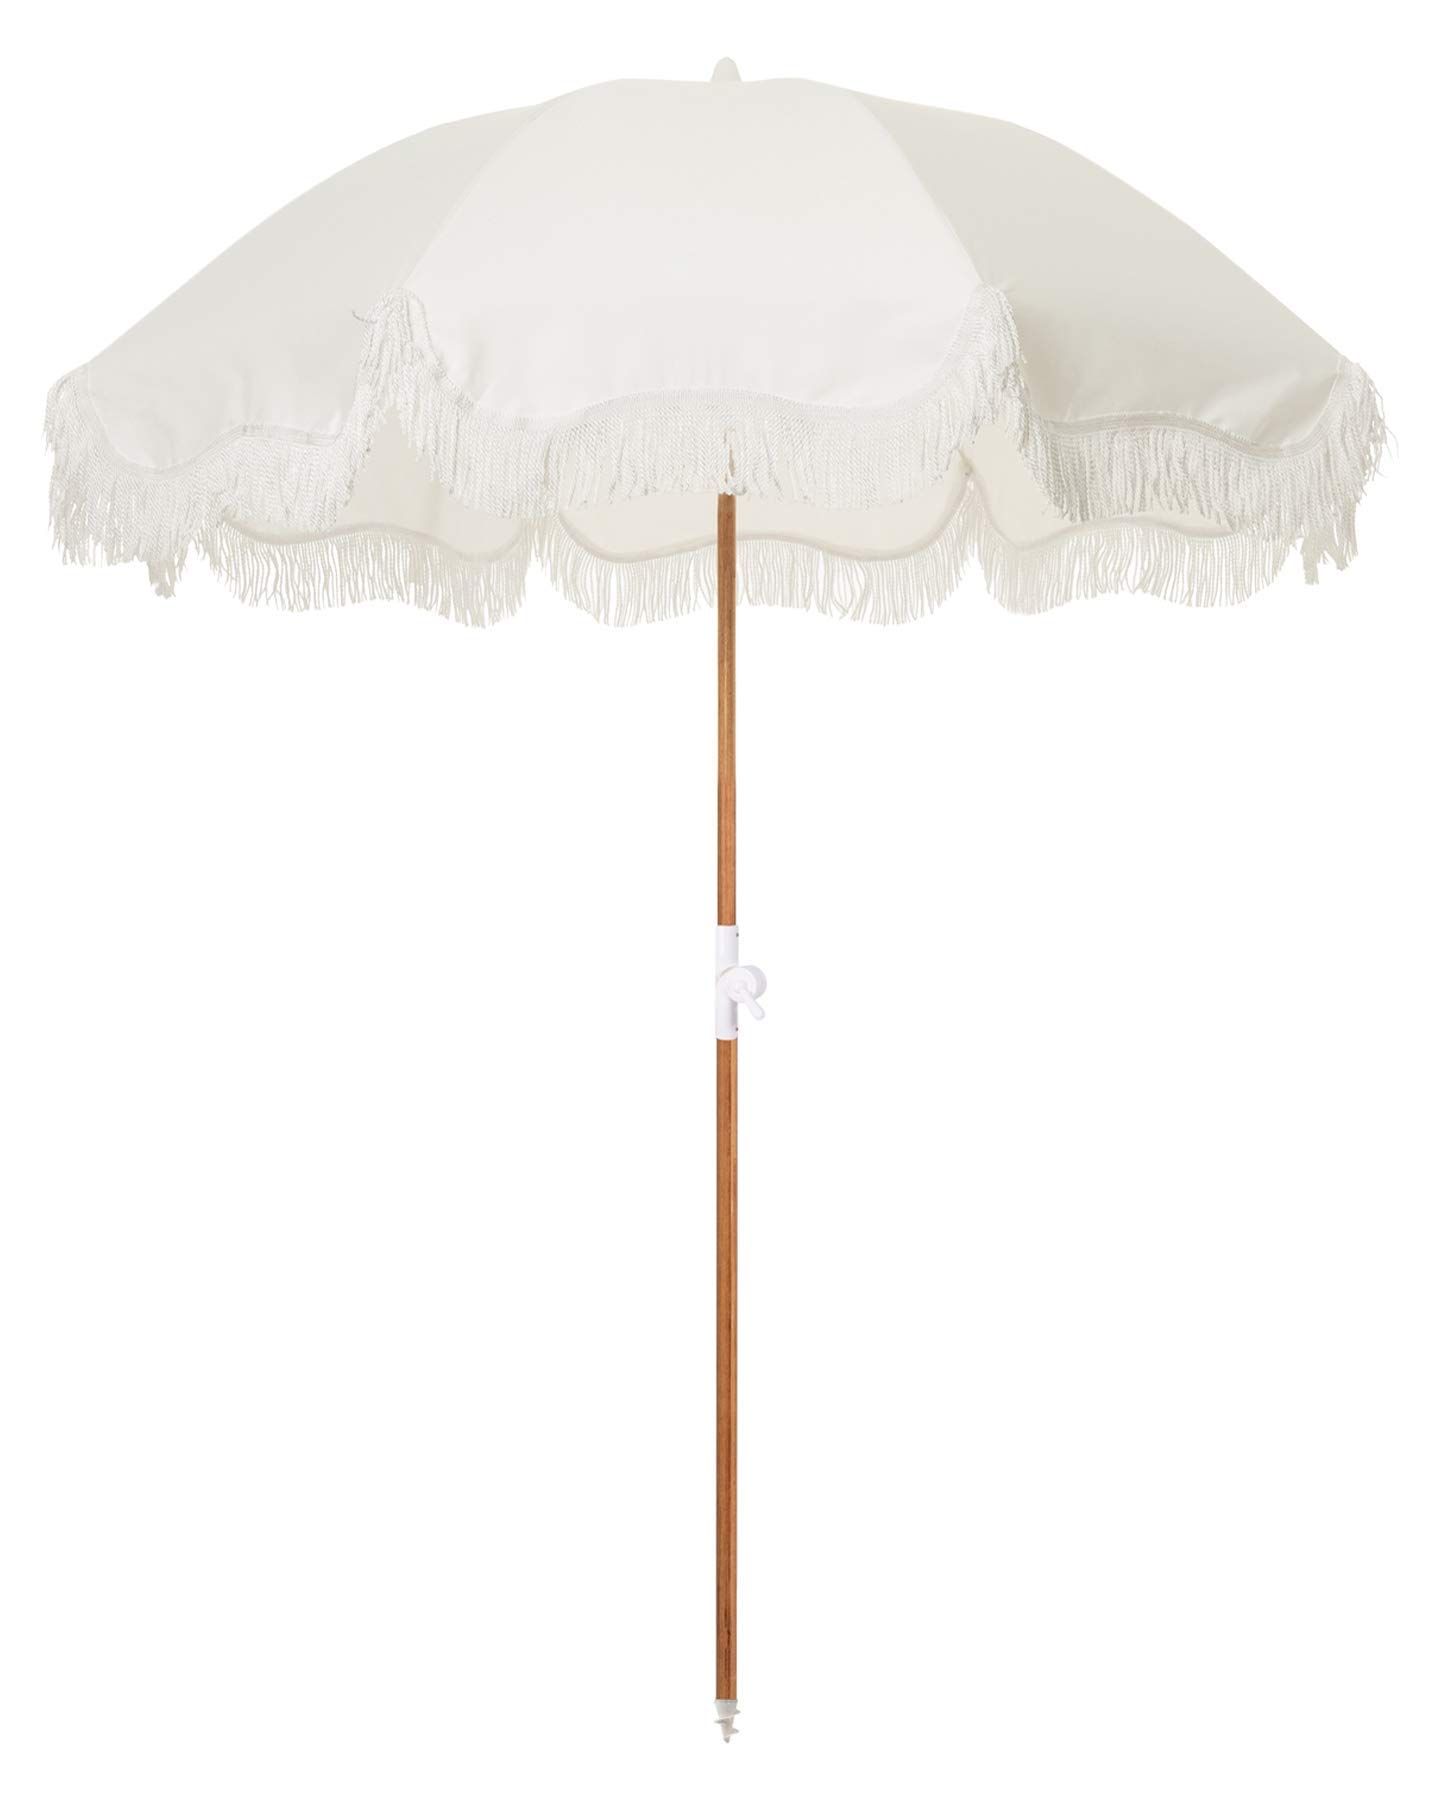 Business & Pleasure Co. Holiday Umbrella - White Boho Beach Umbrella with Fringe - UPF 50+ Blocks 98 | Amazon (US)